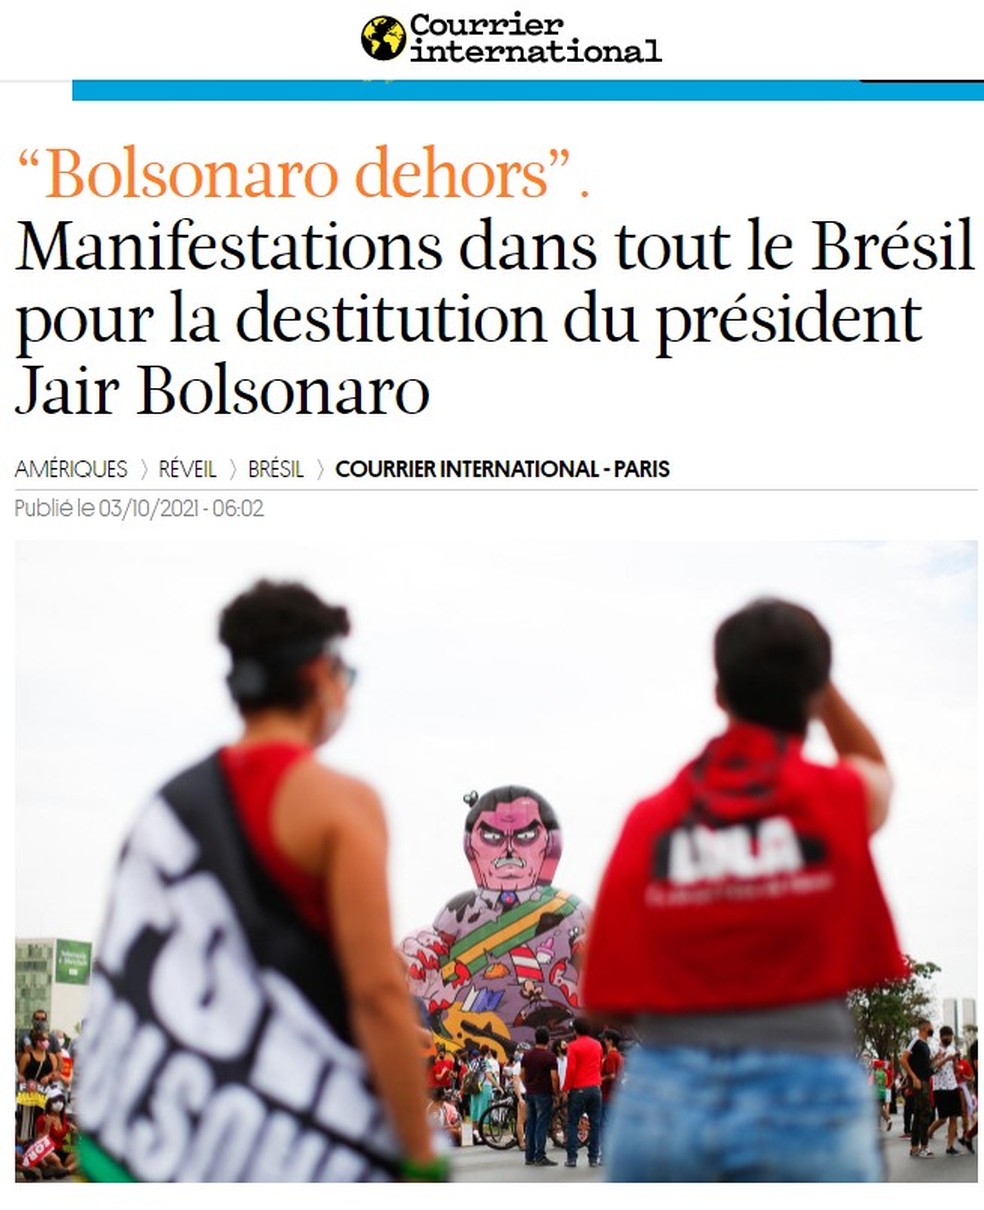 Reprodução de página do Courier International sobre atos contra o presidente Bolsonaro, em 2 de outubro de 2021 — Foto: Reprodução/Courier International